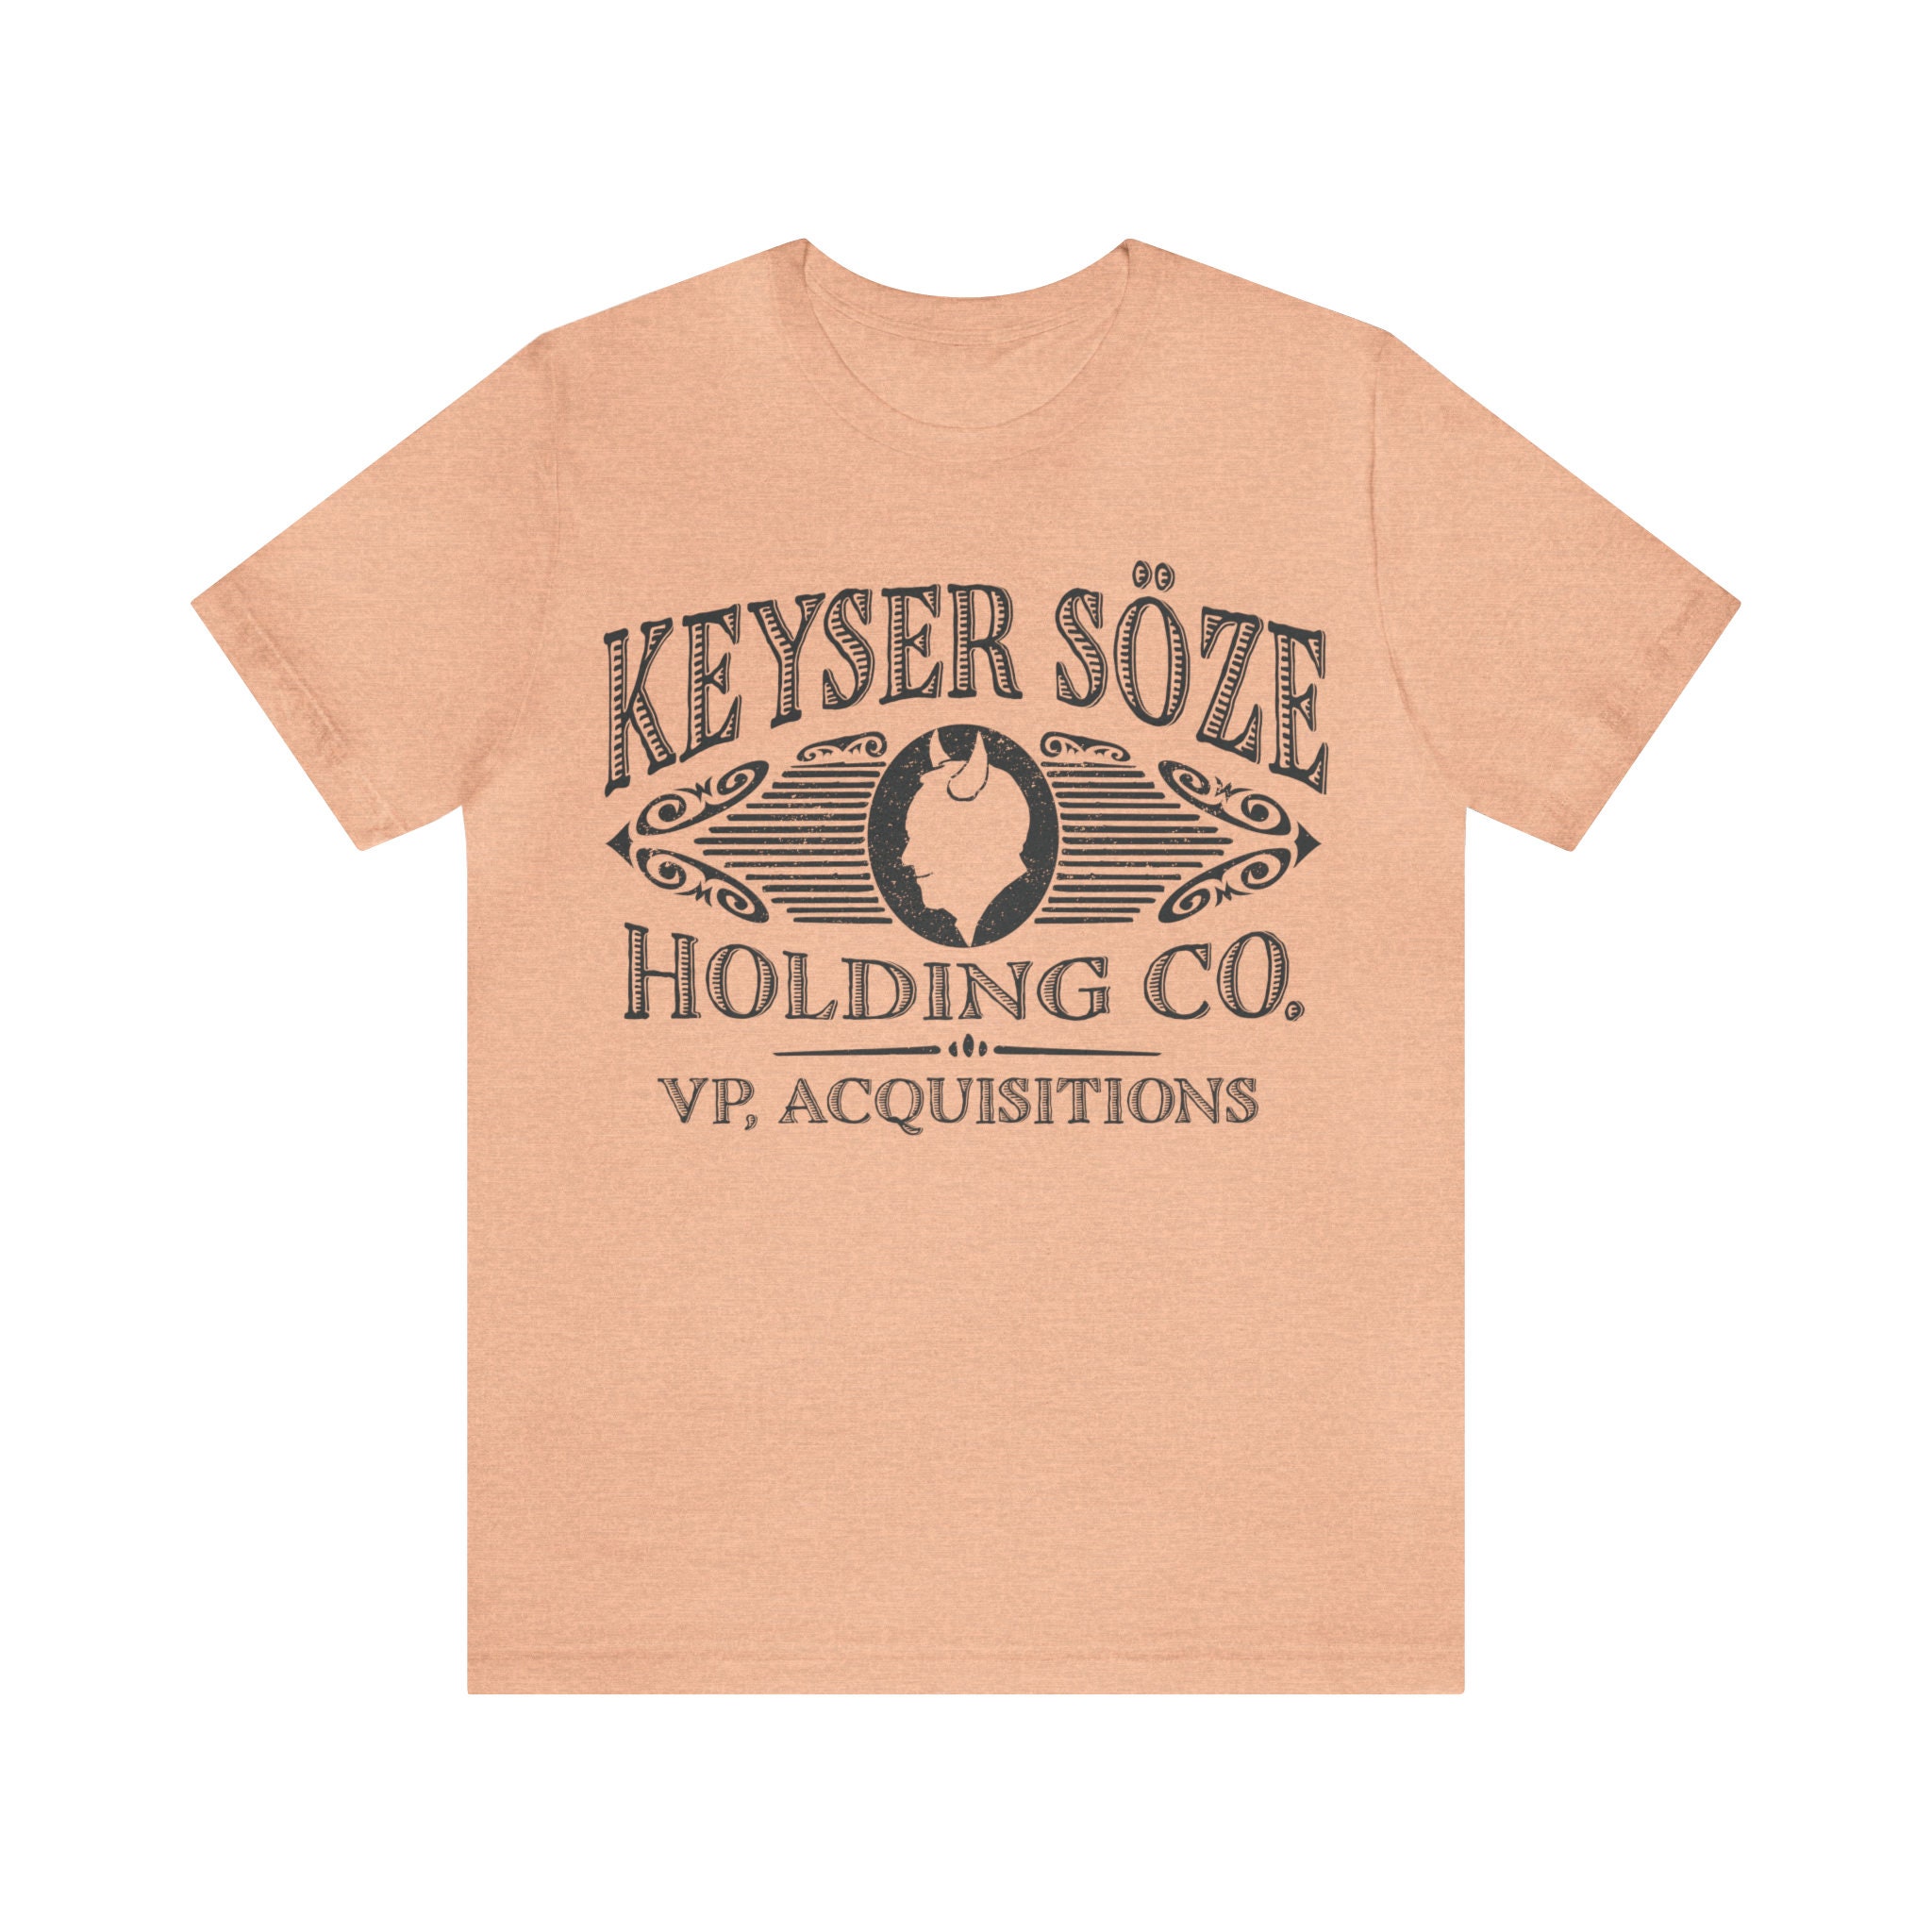 I work for keyser soze' Men's Premium Hoodie